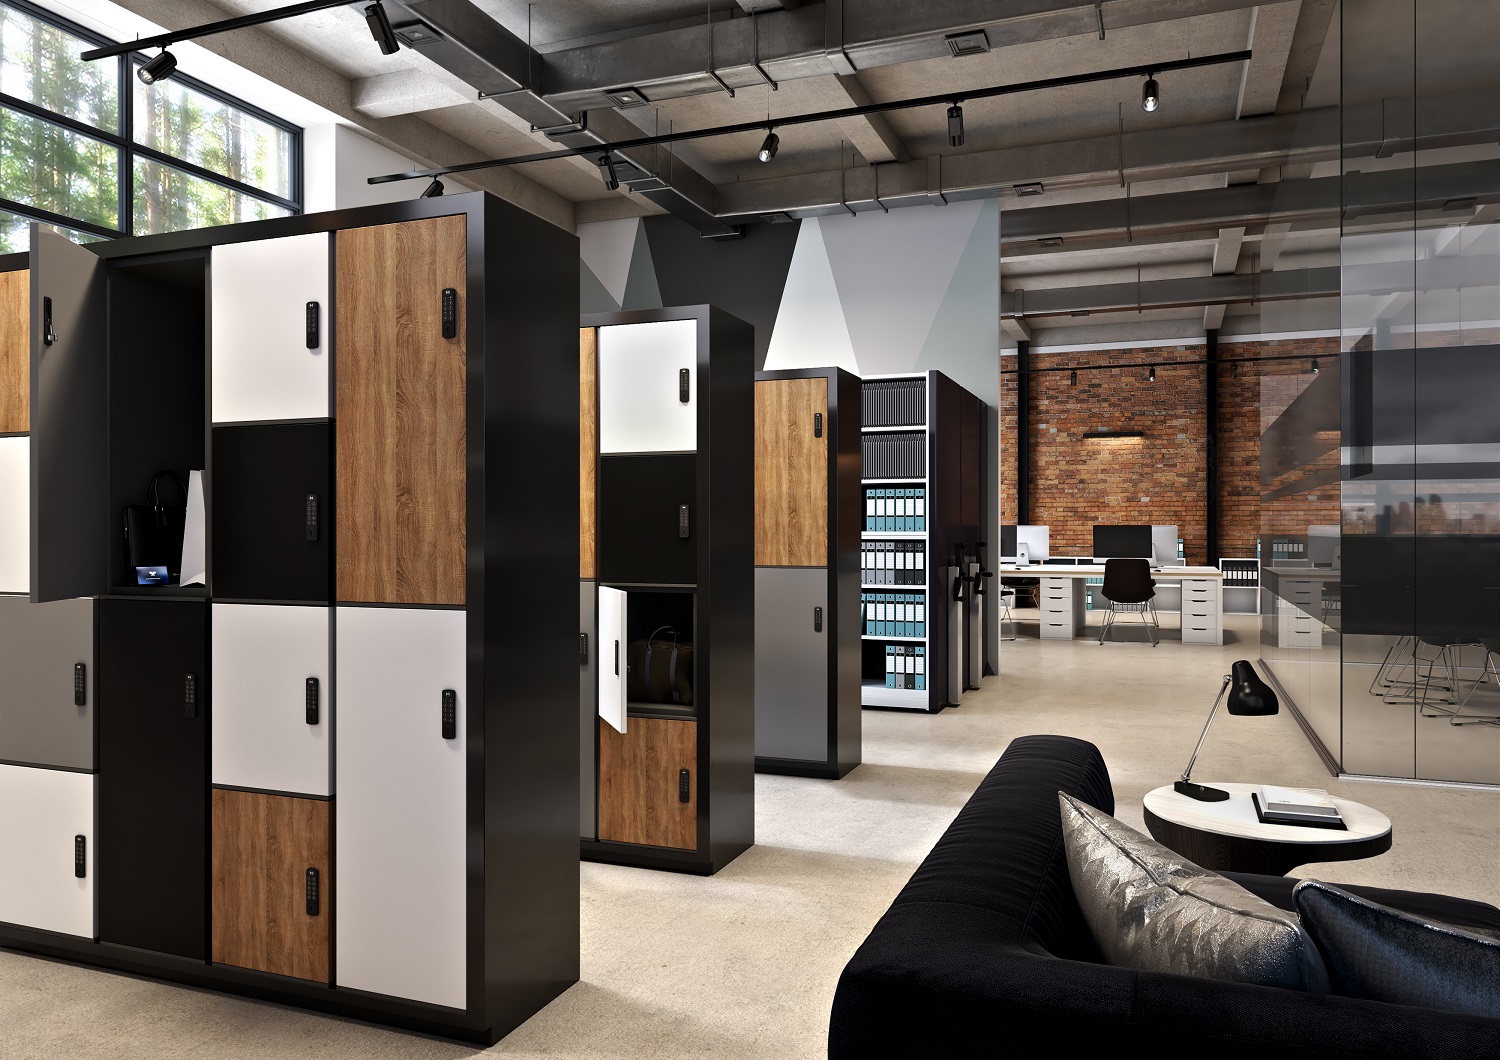 Smart lockers installed in an office